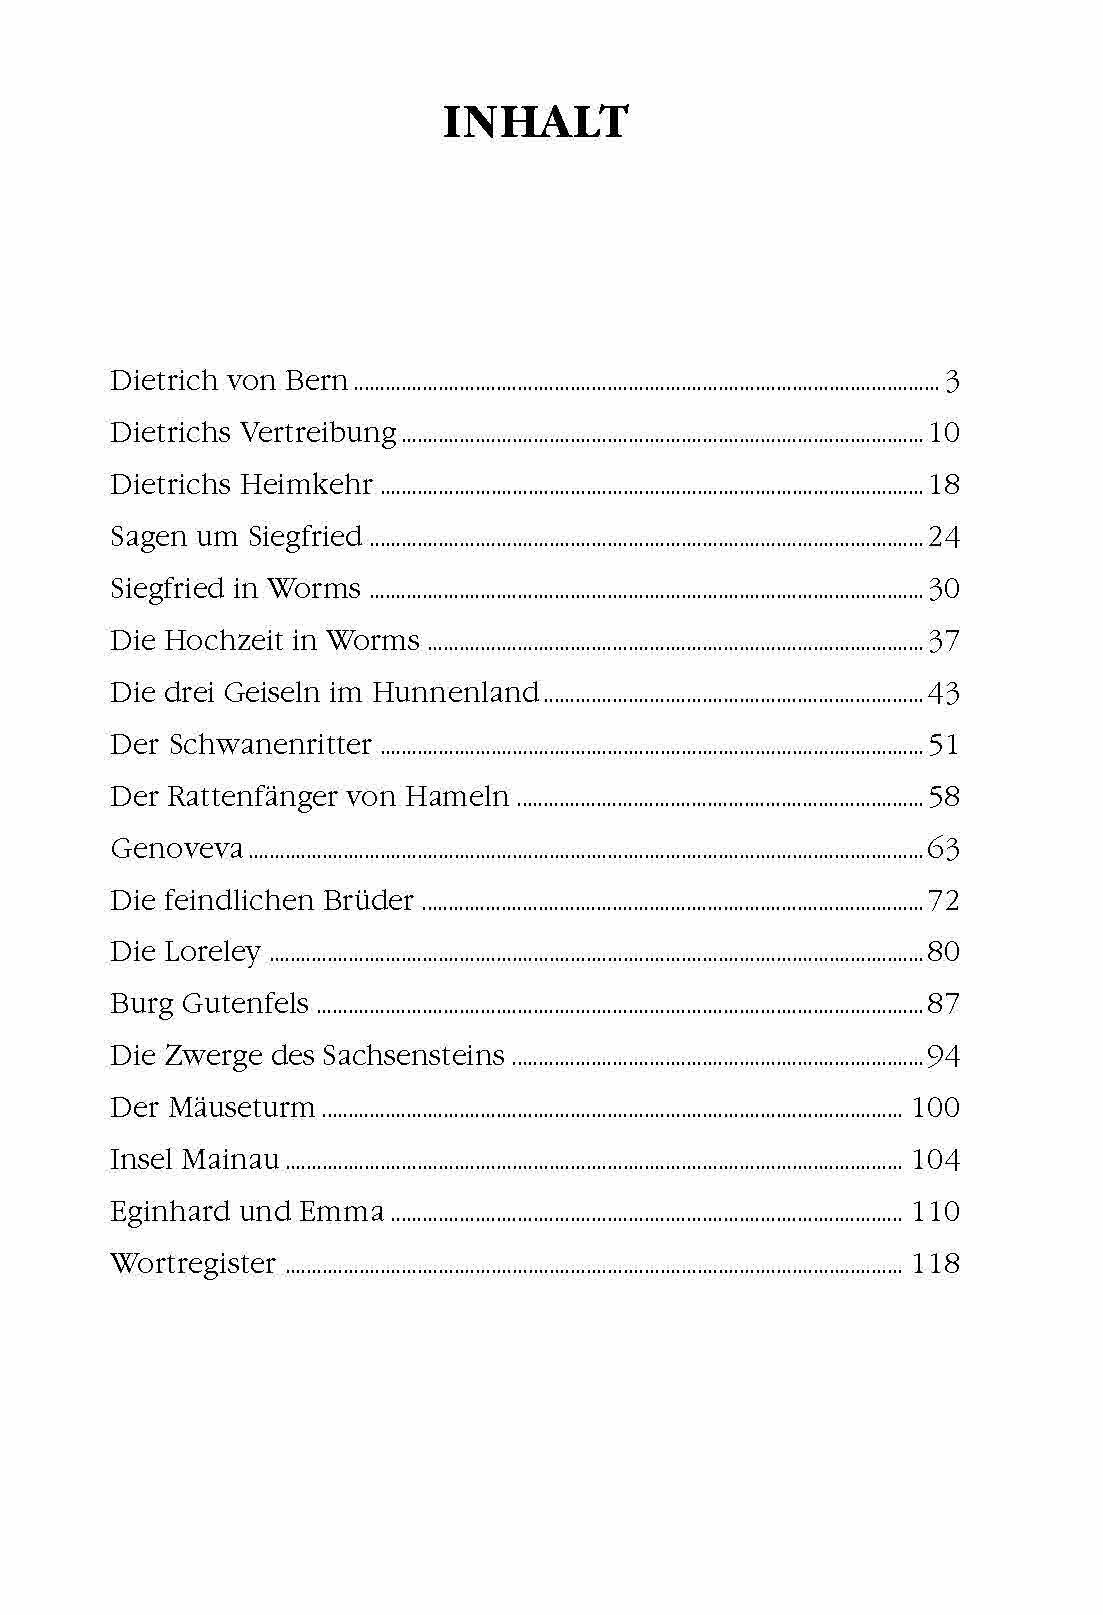 Немецкие предания и легенды. Книга для чтения на немецком языке. Адаптированная - фото №9